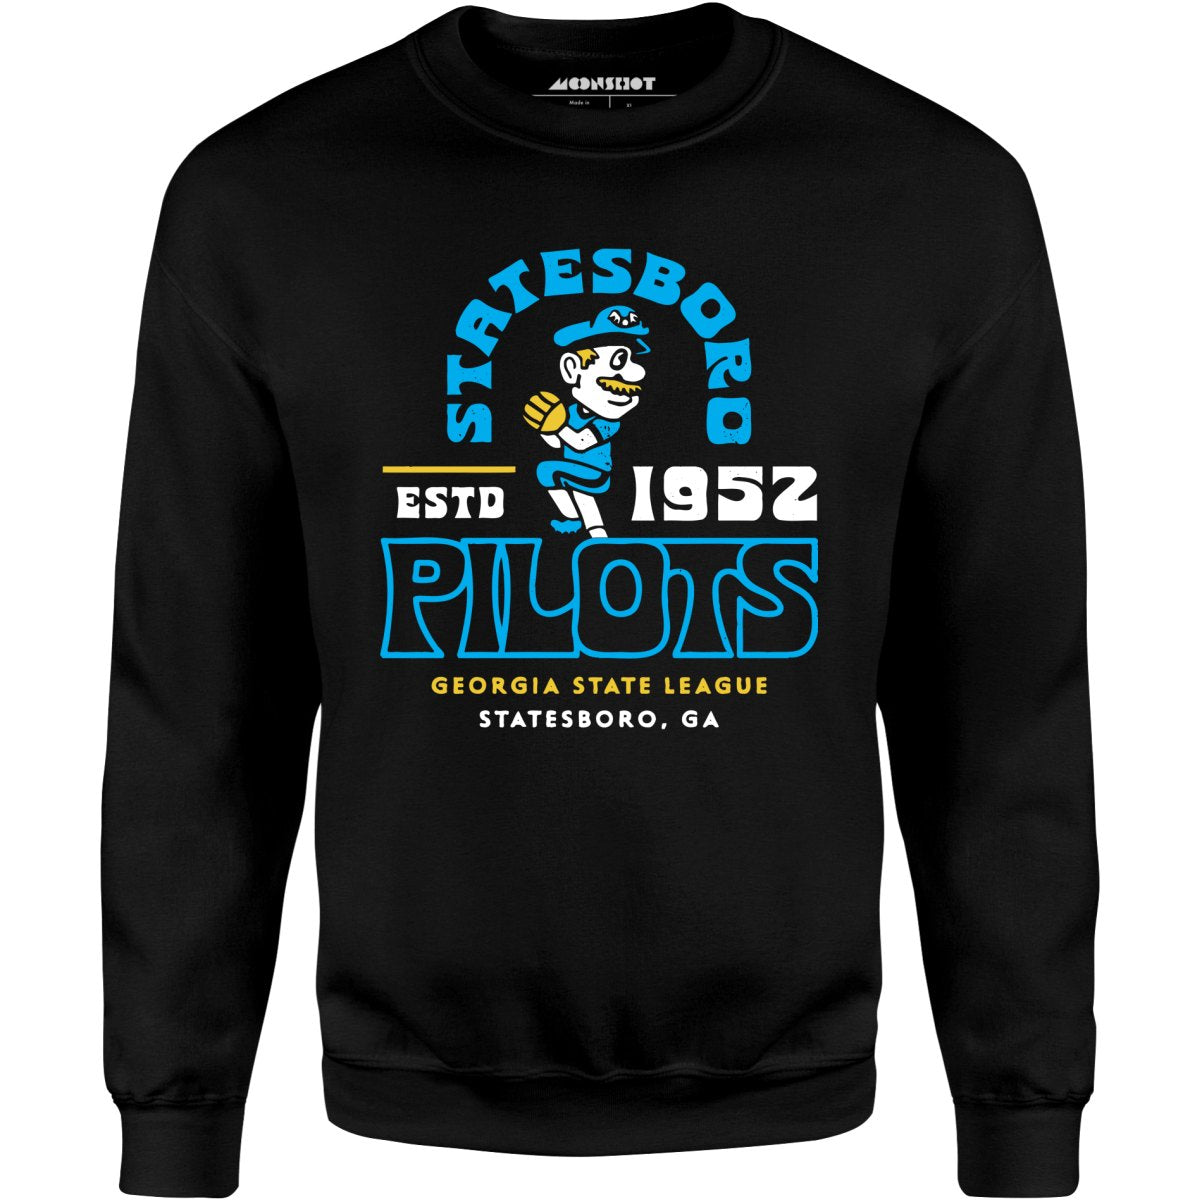 Statesboro Pilots - Georgia - Vintage Defunct Baseball Teams - Unisex Sweatshirt